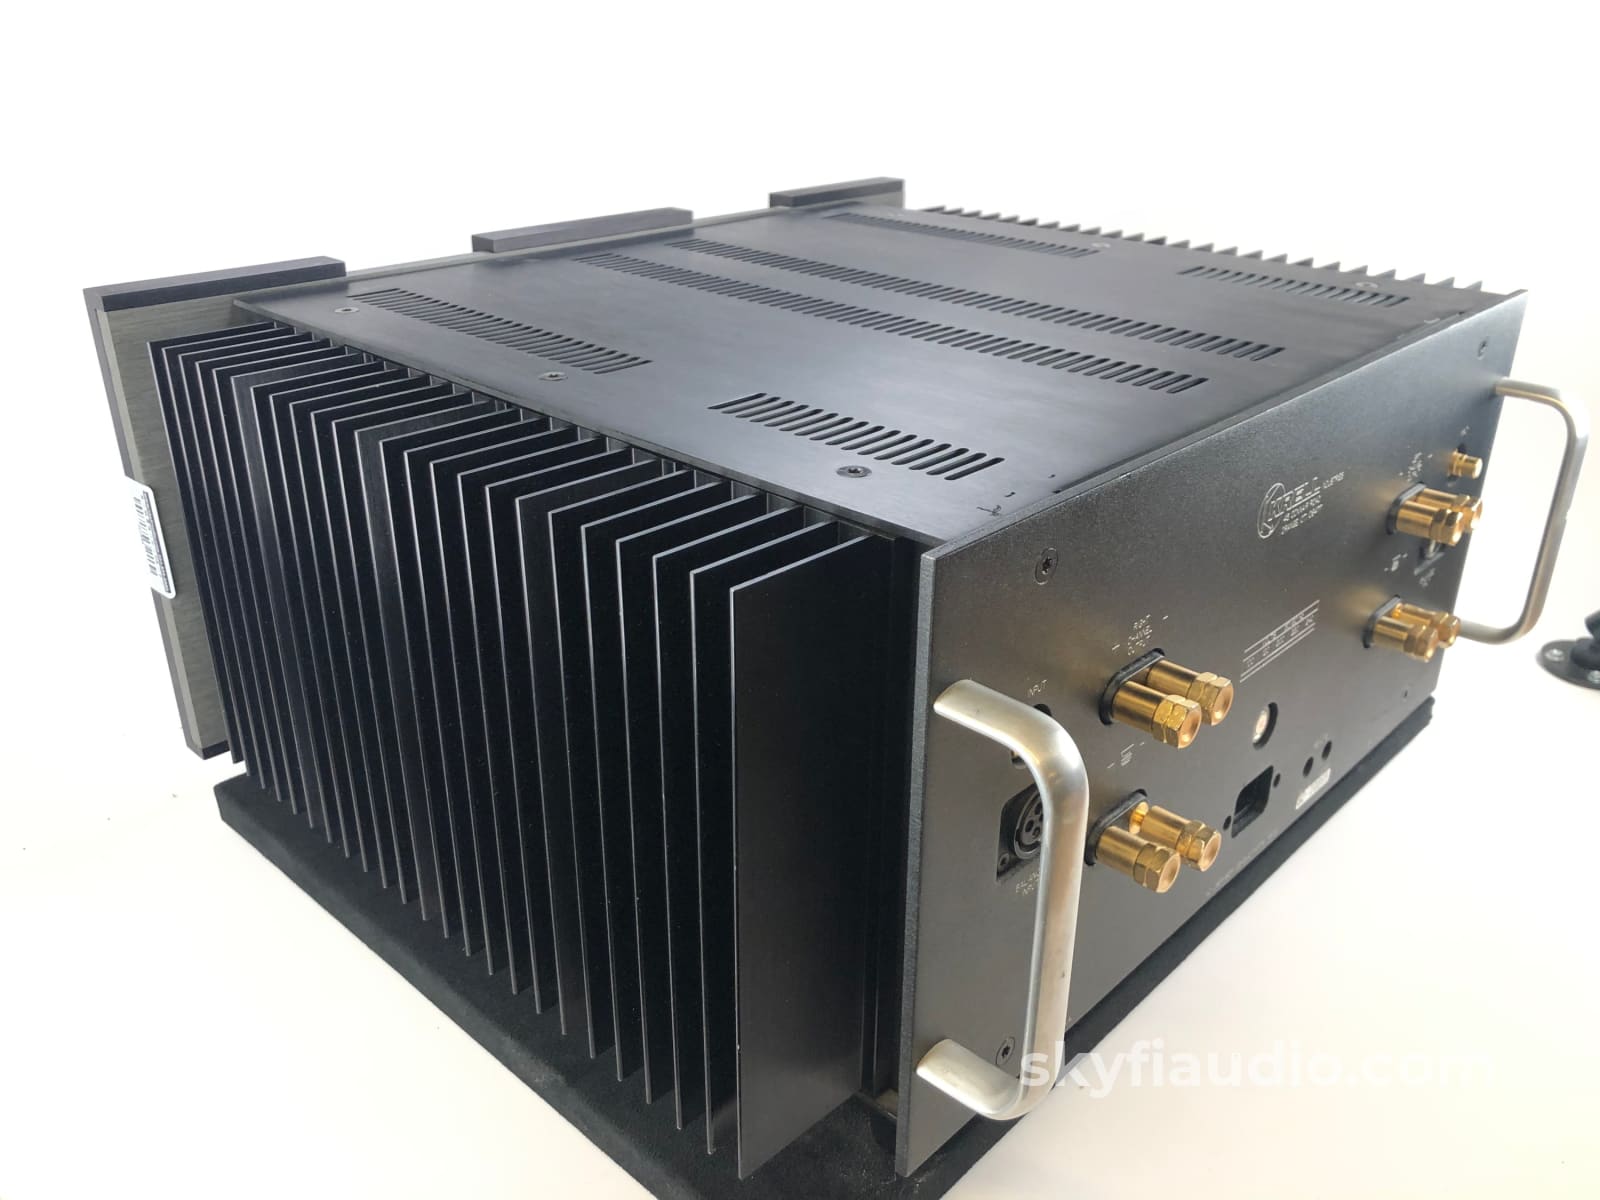 Krell Ksa-100S Amplifier - 100W Class A Without The Heat!